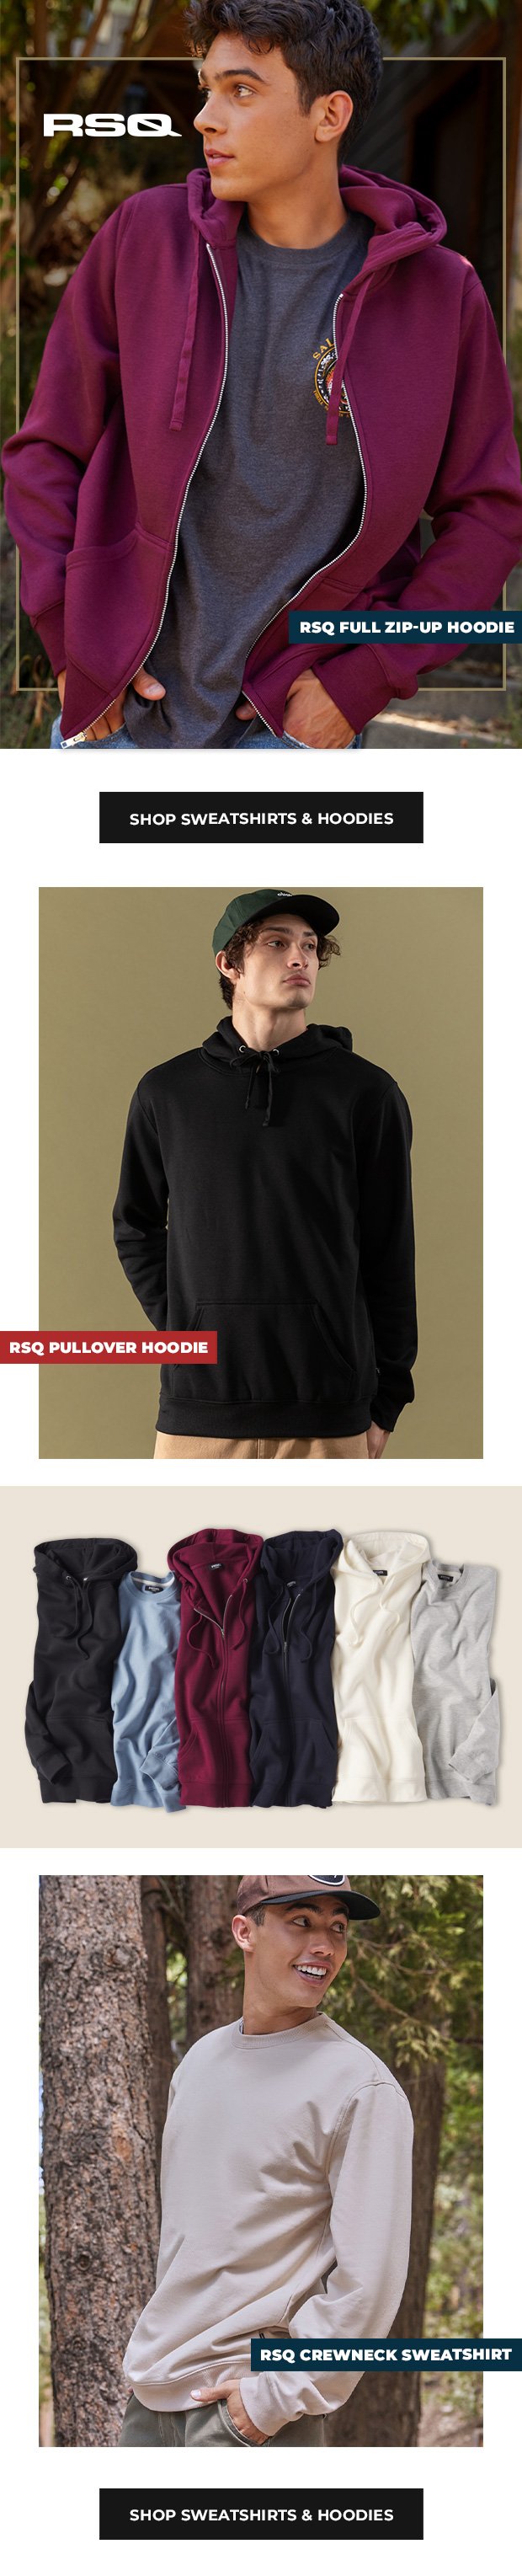 Shop Sweatshirts & Hoodies